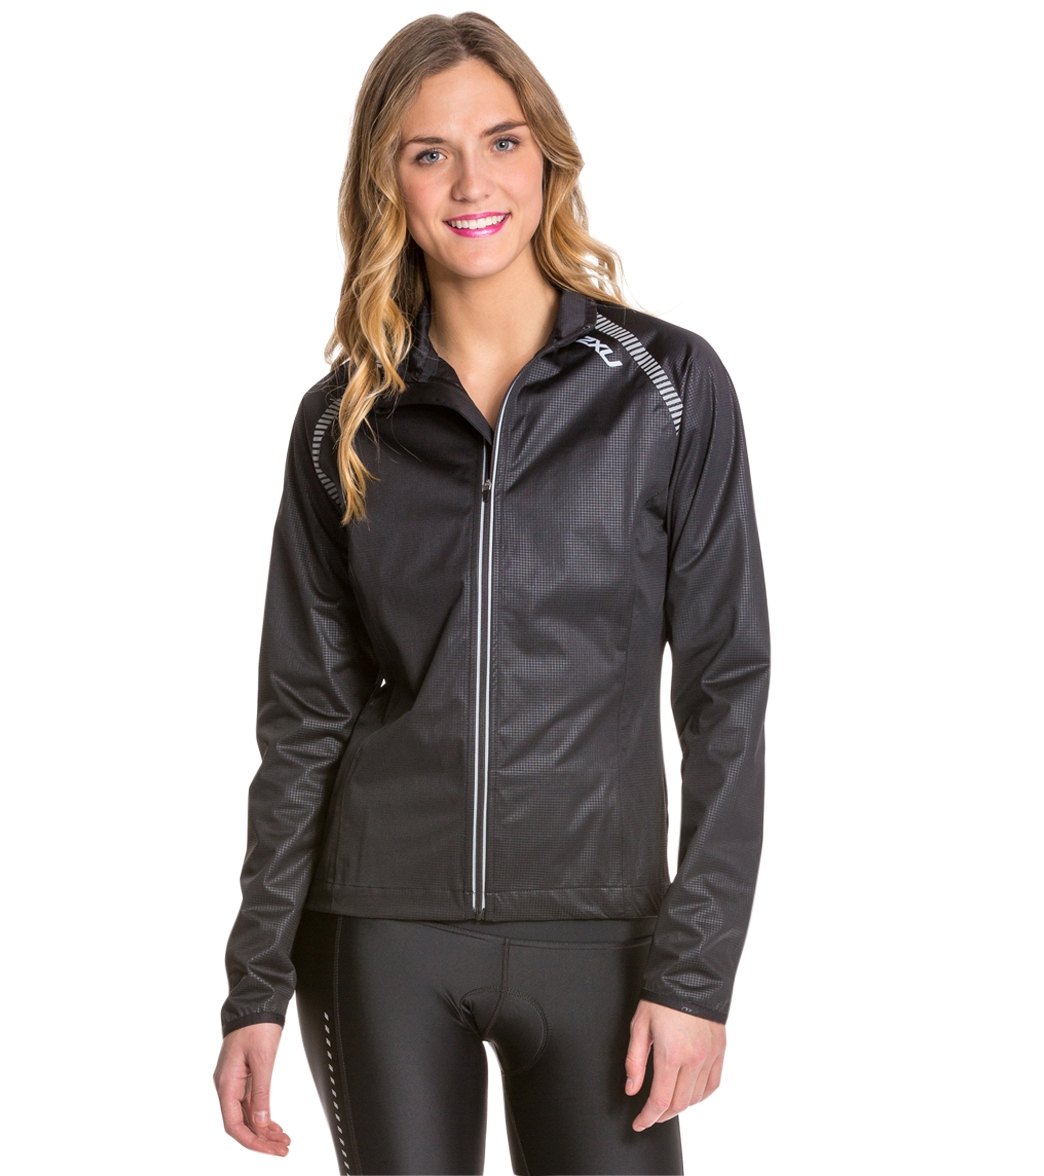 2Xu Women's X-Lite Membrane Jacket - Black/Black Xl - Swimoutlet.com